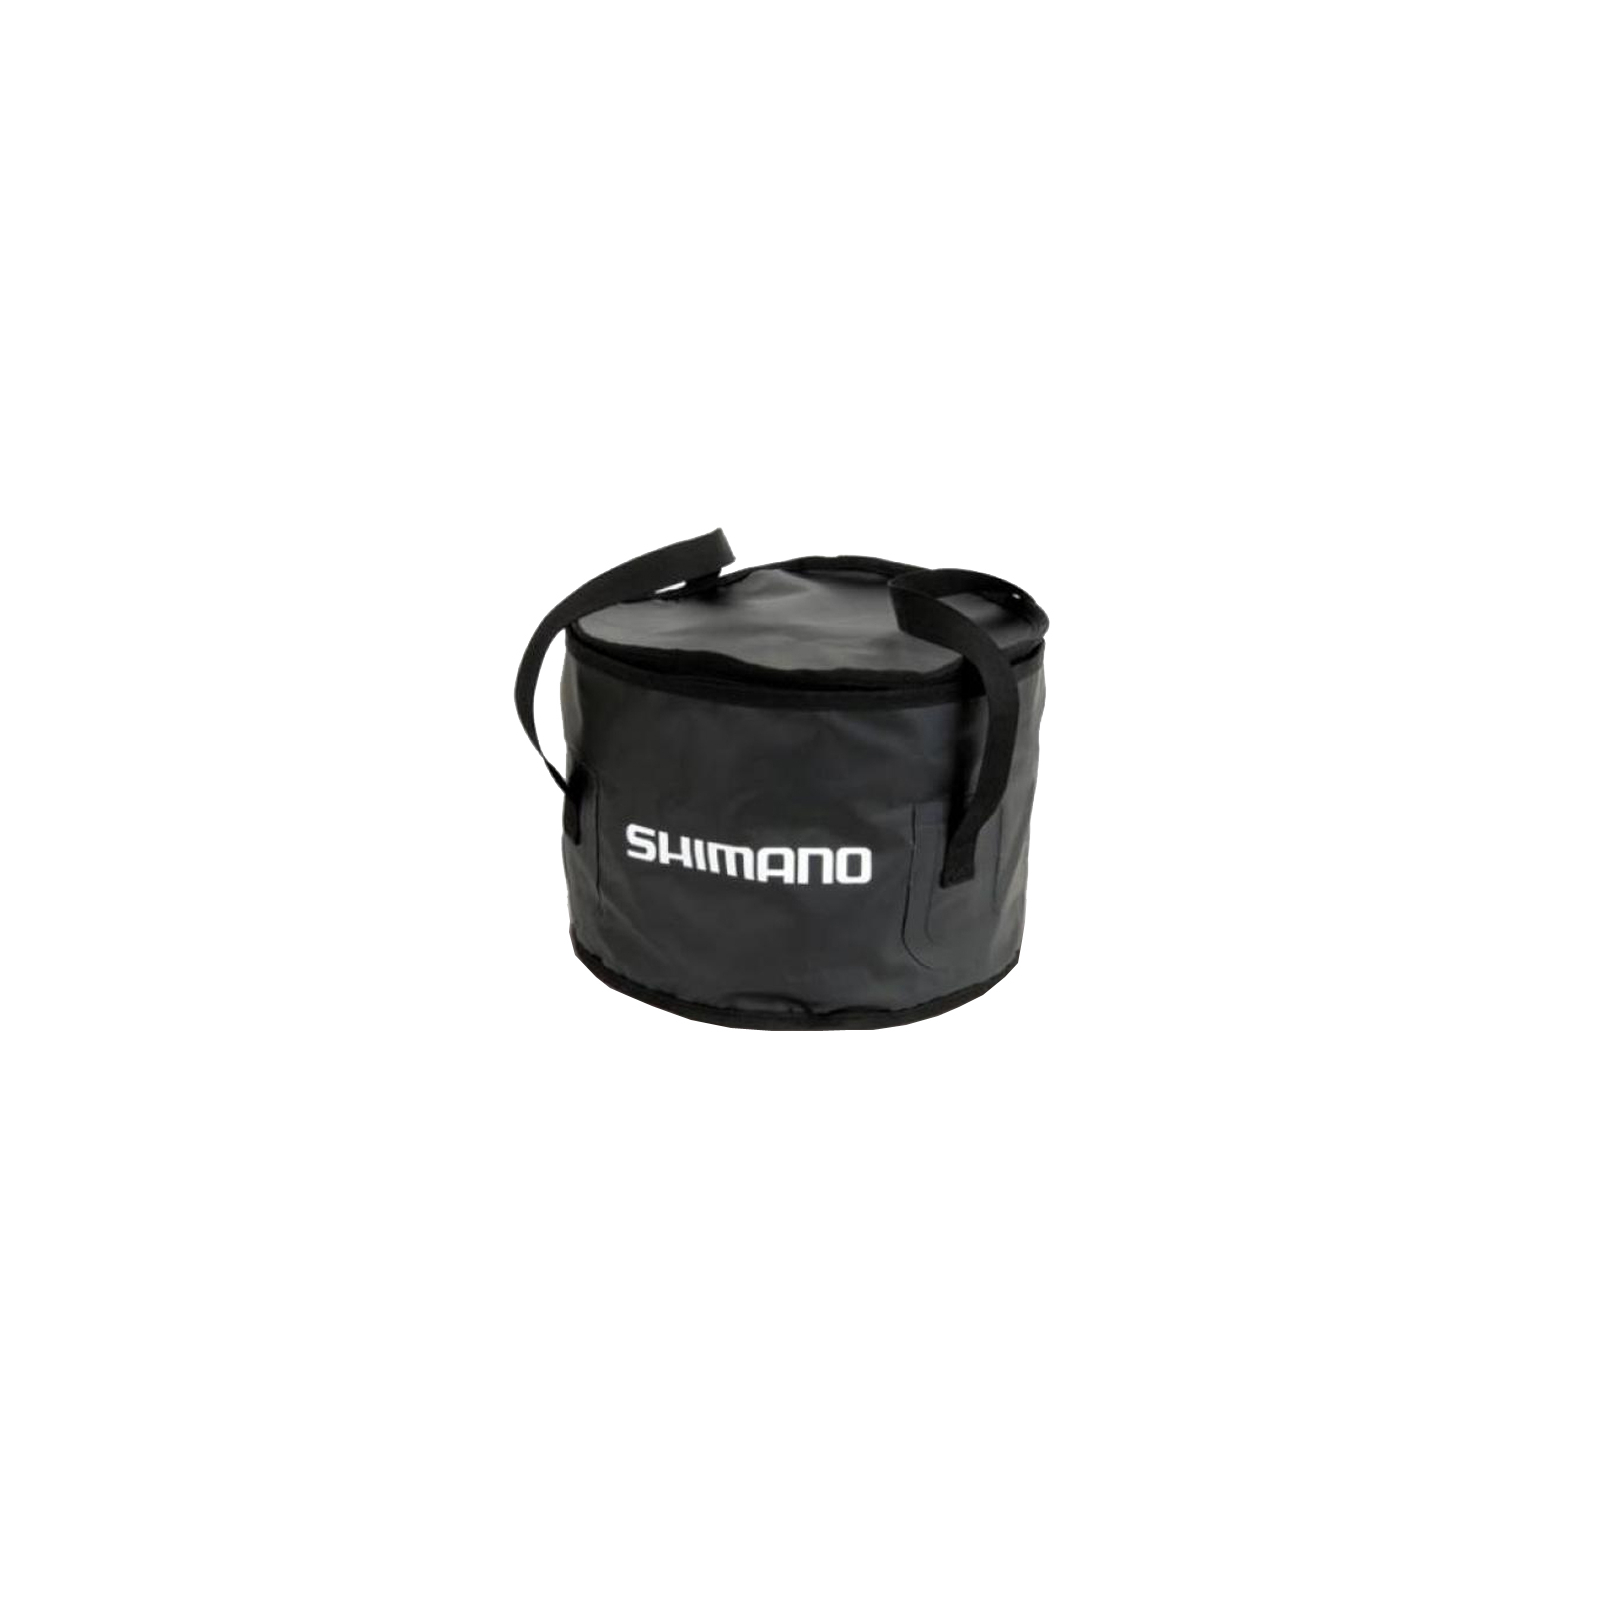 Ведро для прикормки Shimano Groundbait Bowl 20x32cm ц:черный (2266.92.72)